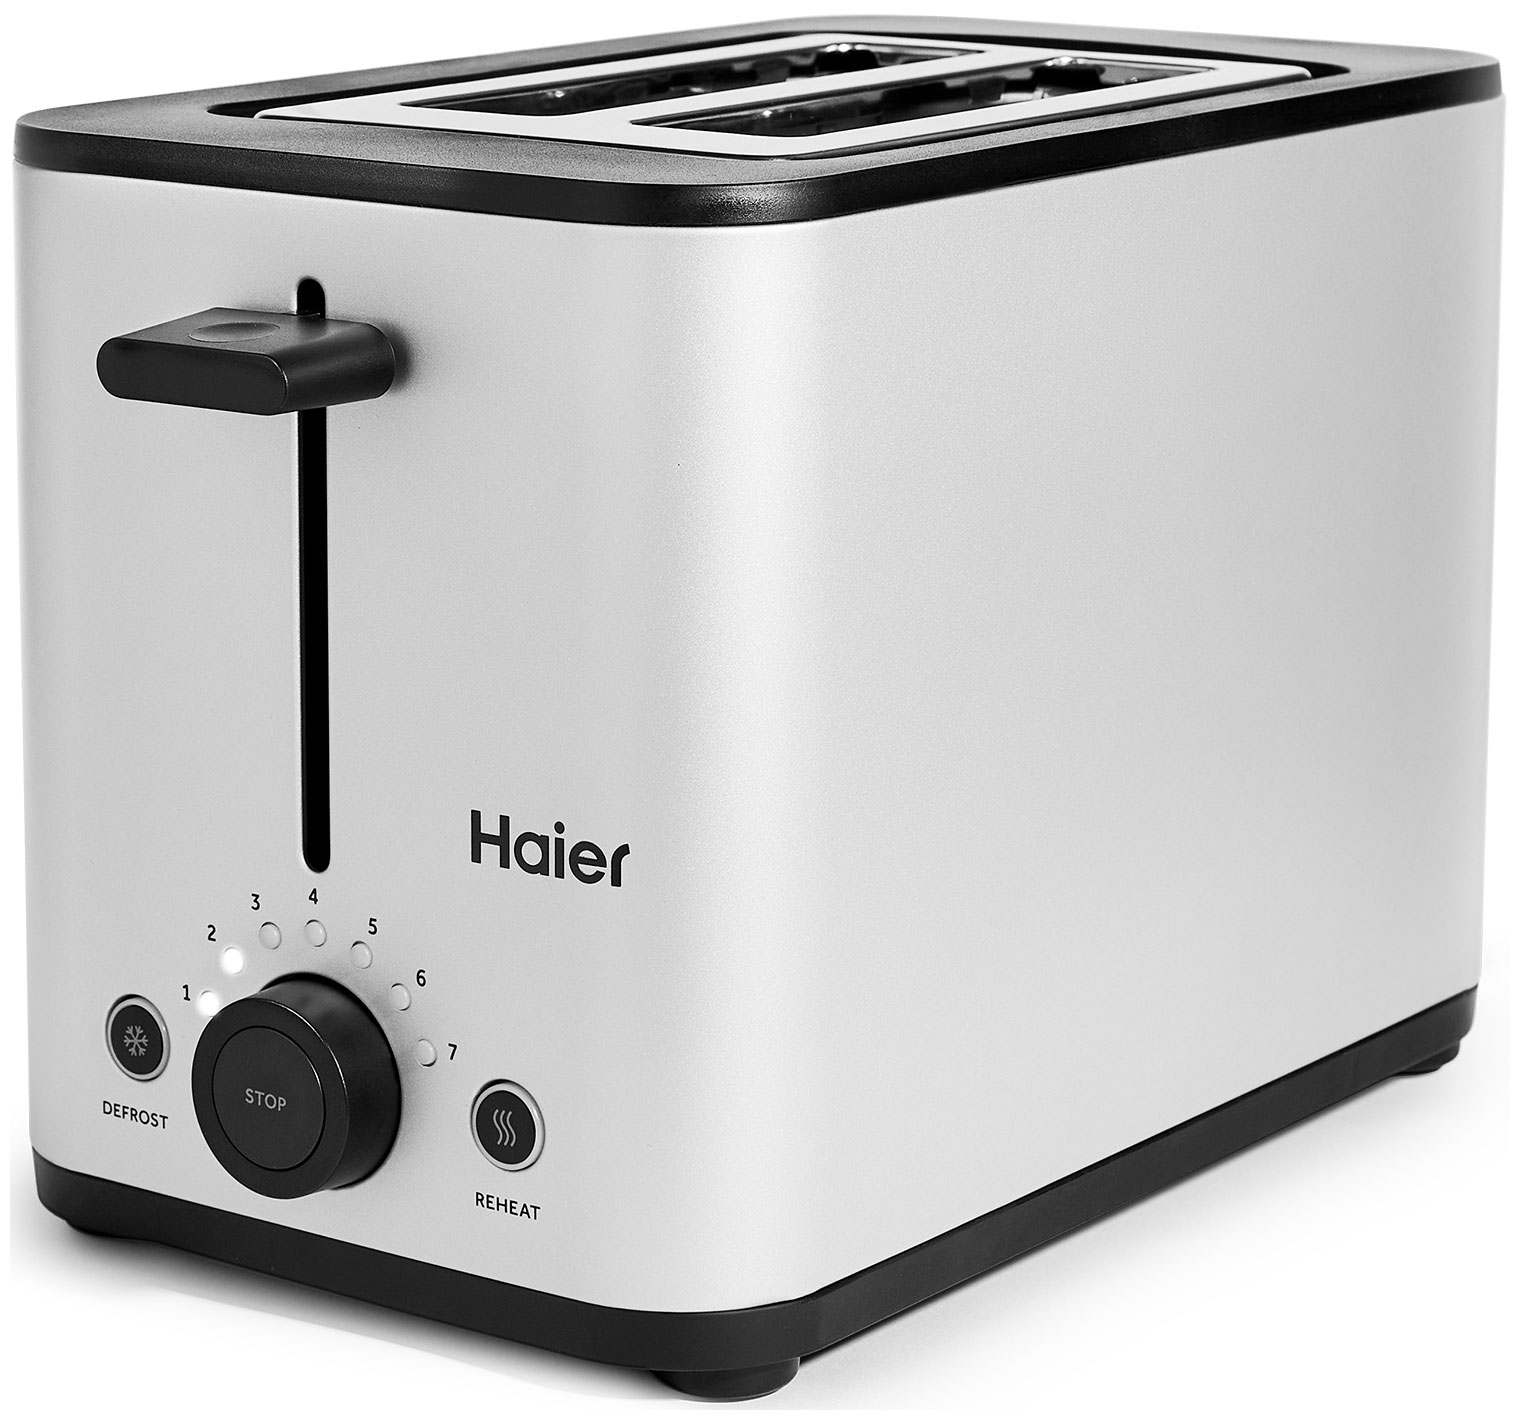 Тостер Haier HT-601 серебристый тостер pioneer ts185 серебристый